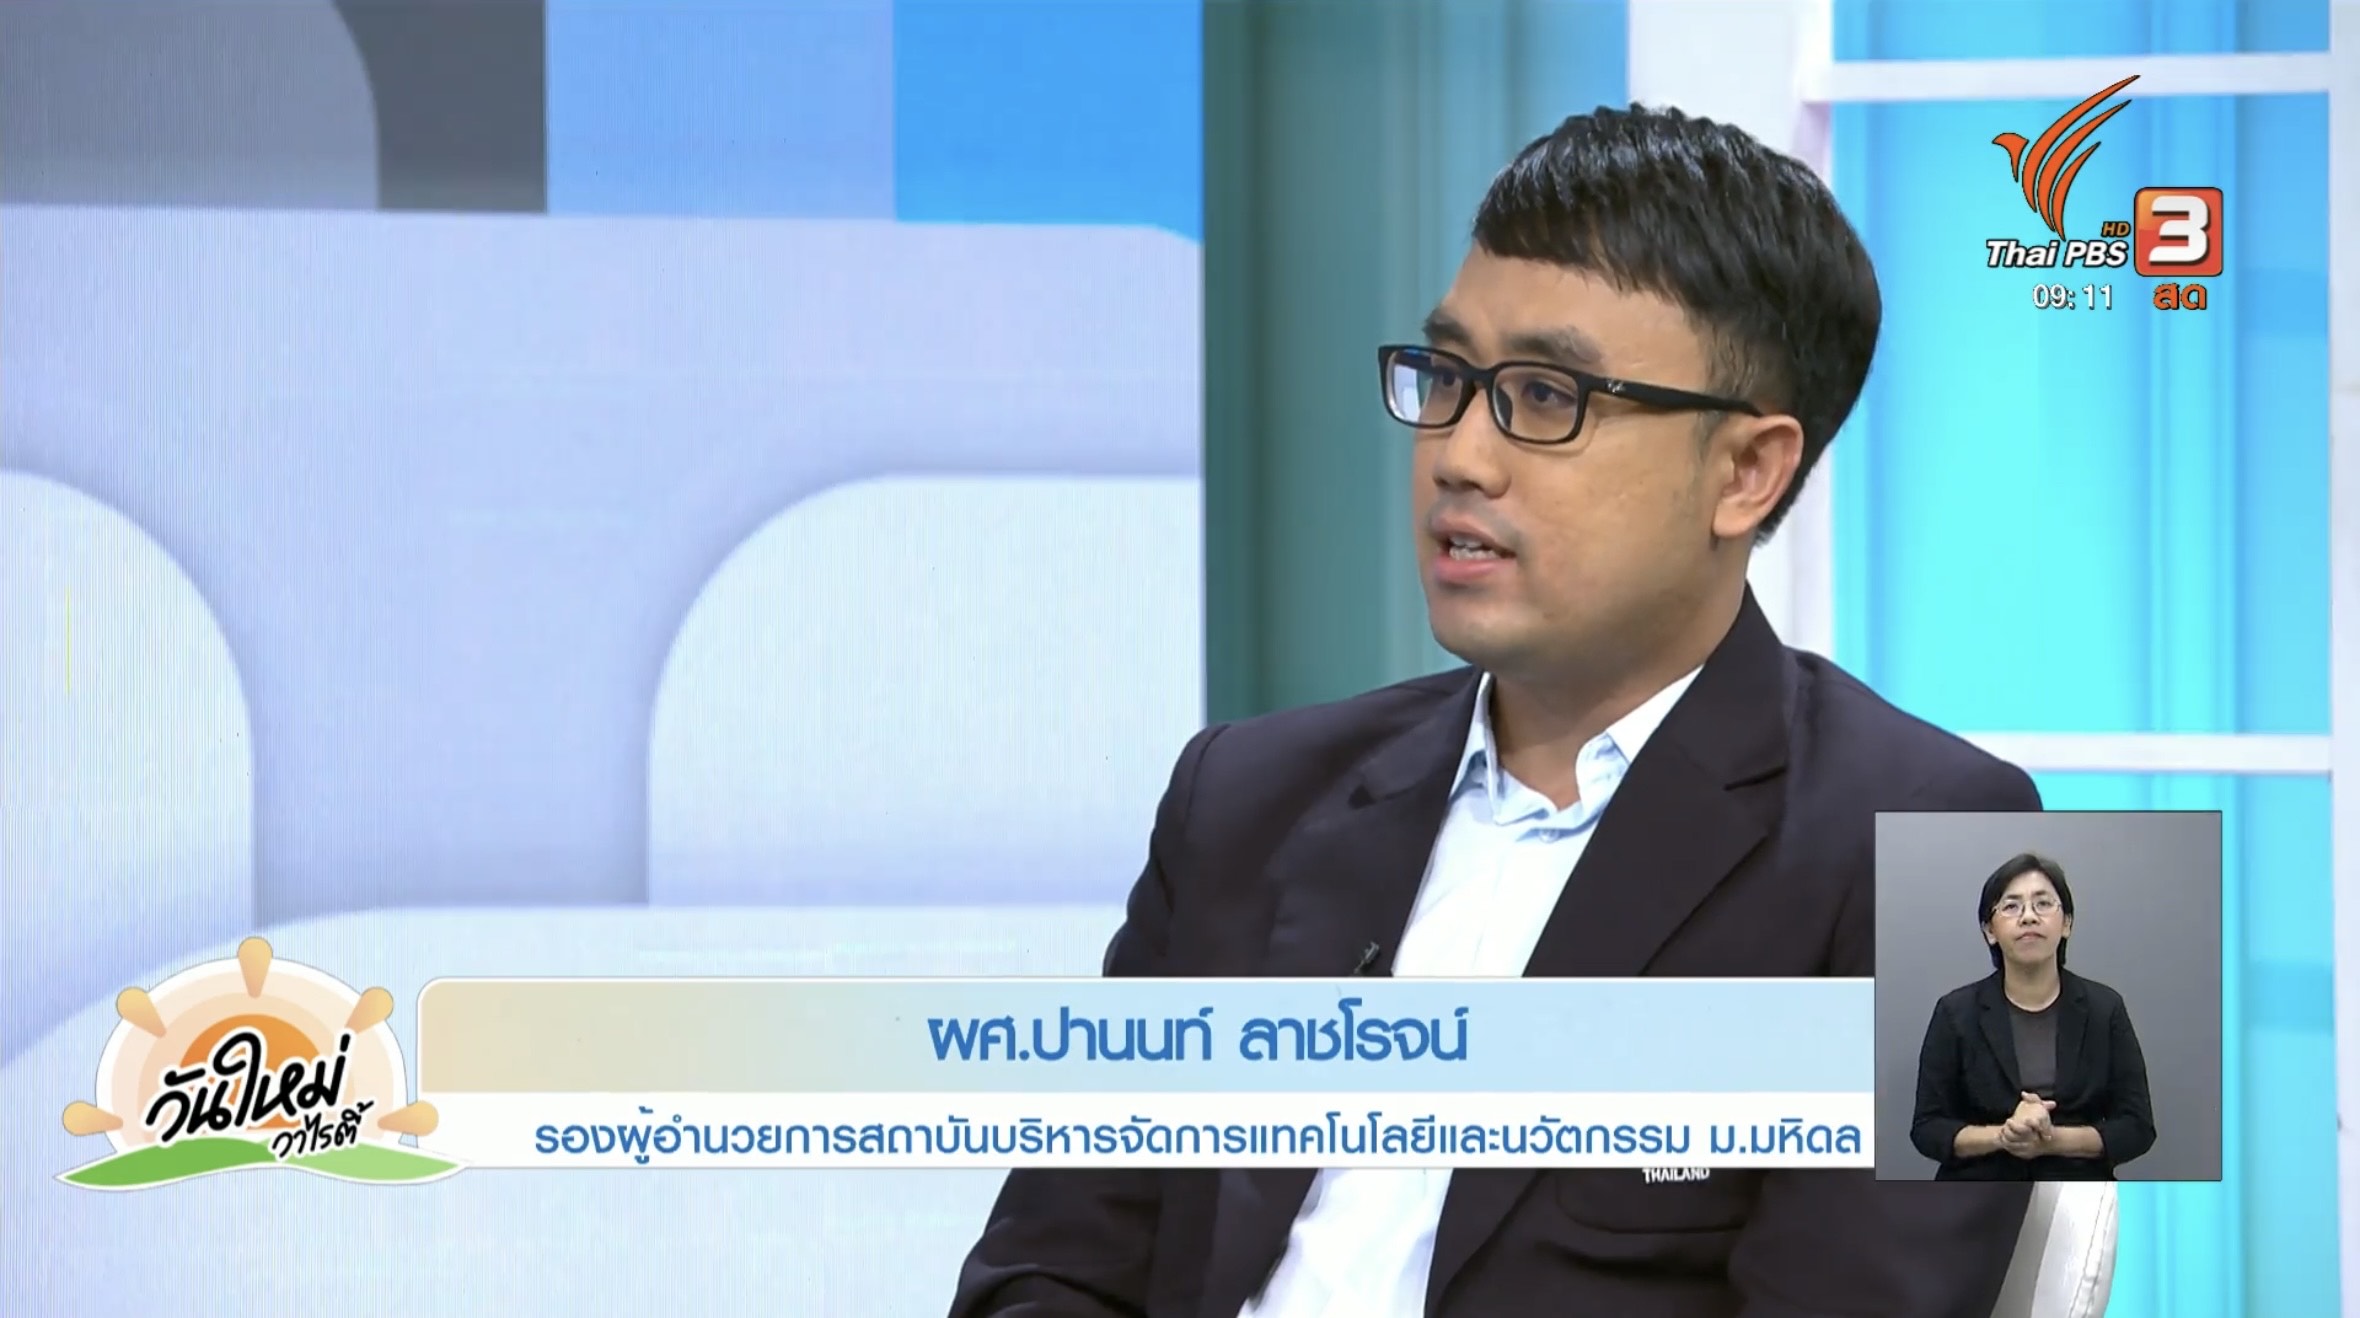 ผู้ช่วยศาสตราจารย์ ดร.ปานนท์ ลาชโรจน์ รองผู้อำนวยการสถาบันบริหารจัดการเทคโนโลยีและนวัตกรรม (iNT) ม.มหิดล เข้าร่วมพูดคุยสัมภาษณ์ในรายการวันใหม่วาไรตี้ ทางสถานีโทรทัศน์ Thai PBS เชิญชวนเข้าร่วมงาน ‘มหกรรมมหิดลเพื่อสังคม ร่วมสร้างสังคมสุขภาพดี ด้วยการลดบริโภคโซเดียม MUSEF 2023 (Mahidol University Social Engagement Forum)